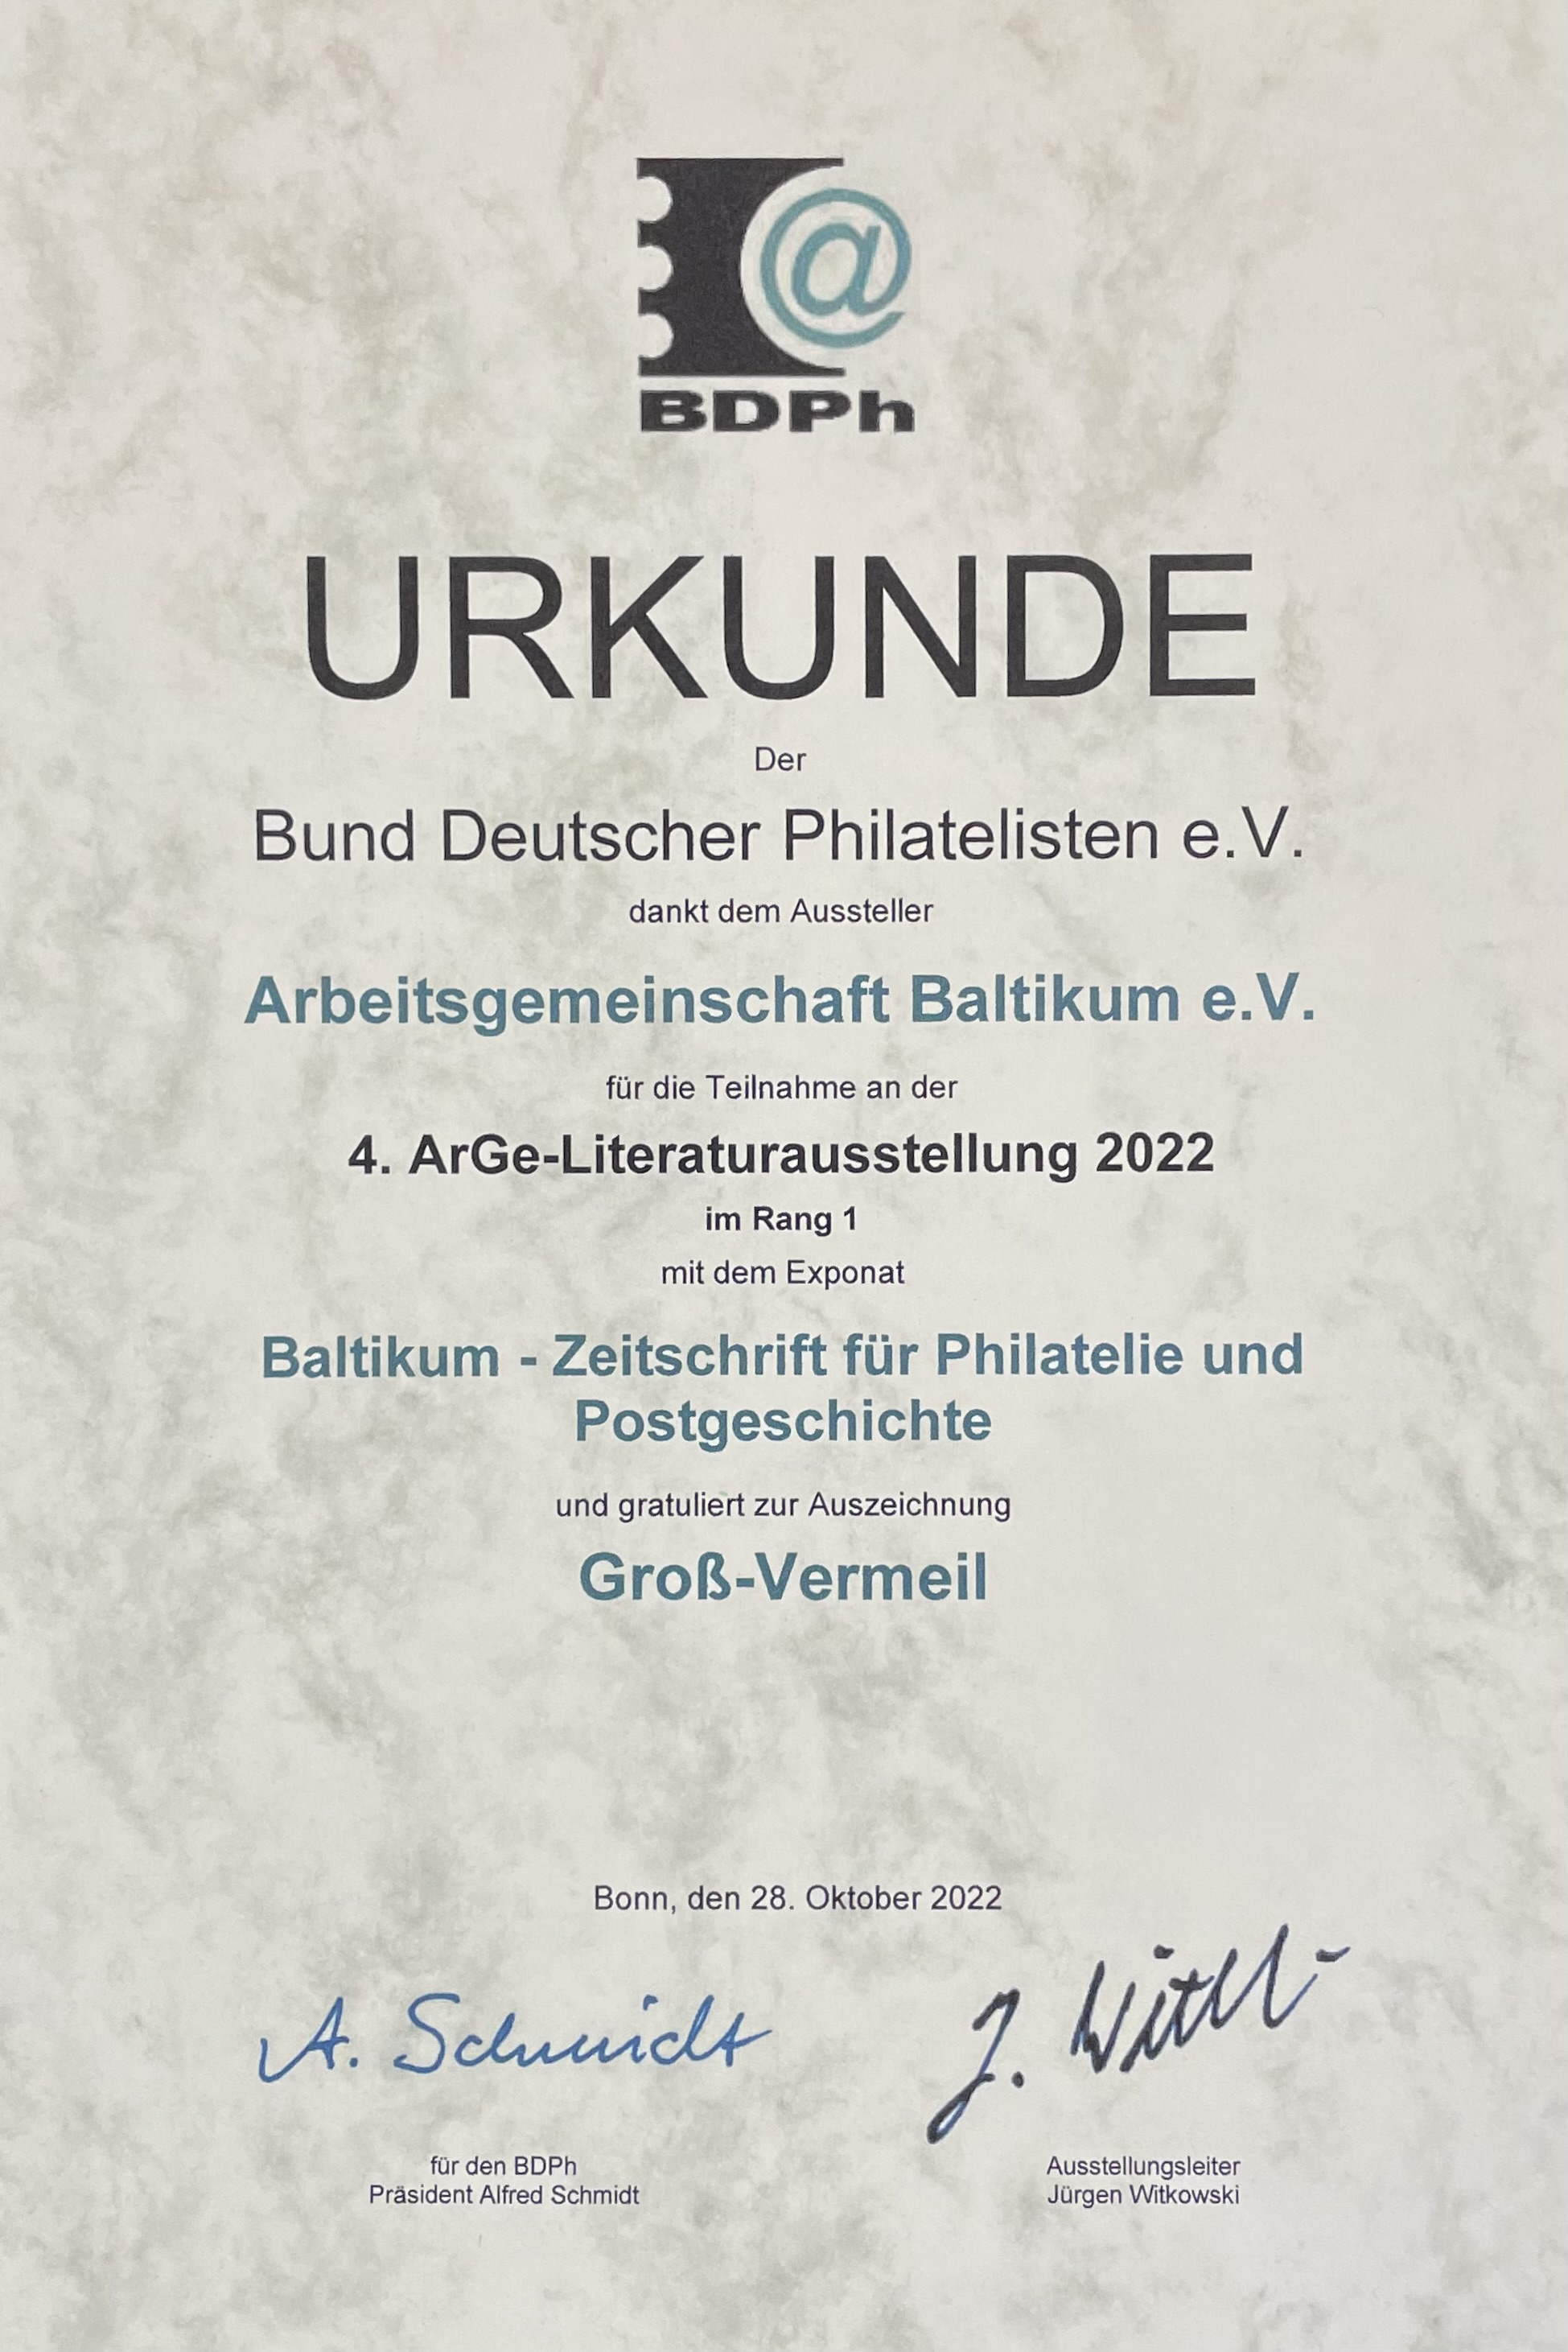 4. ArGe-Literaturausstellung des BDPh 2022: Groß-Vermeil (84 P.) für die BALTIKUM